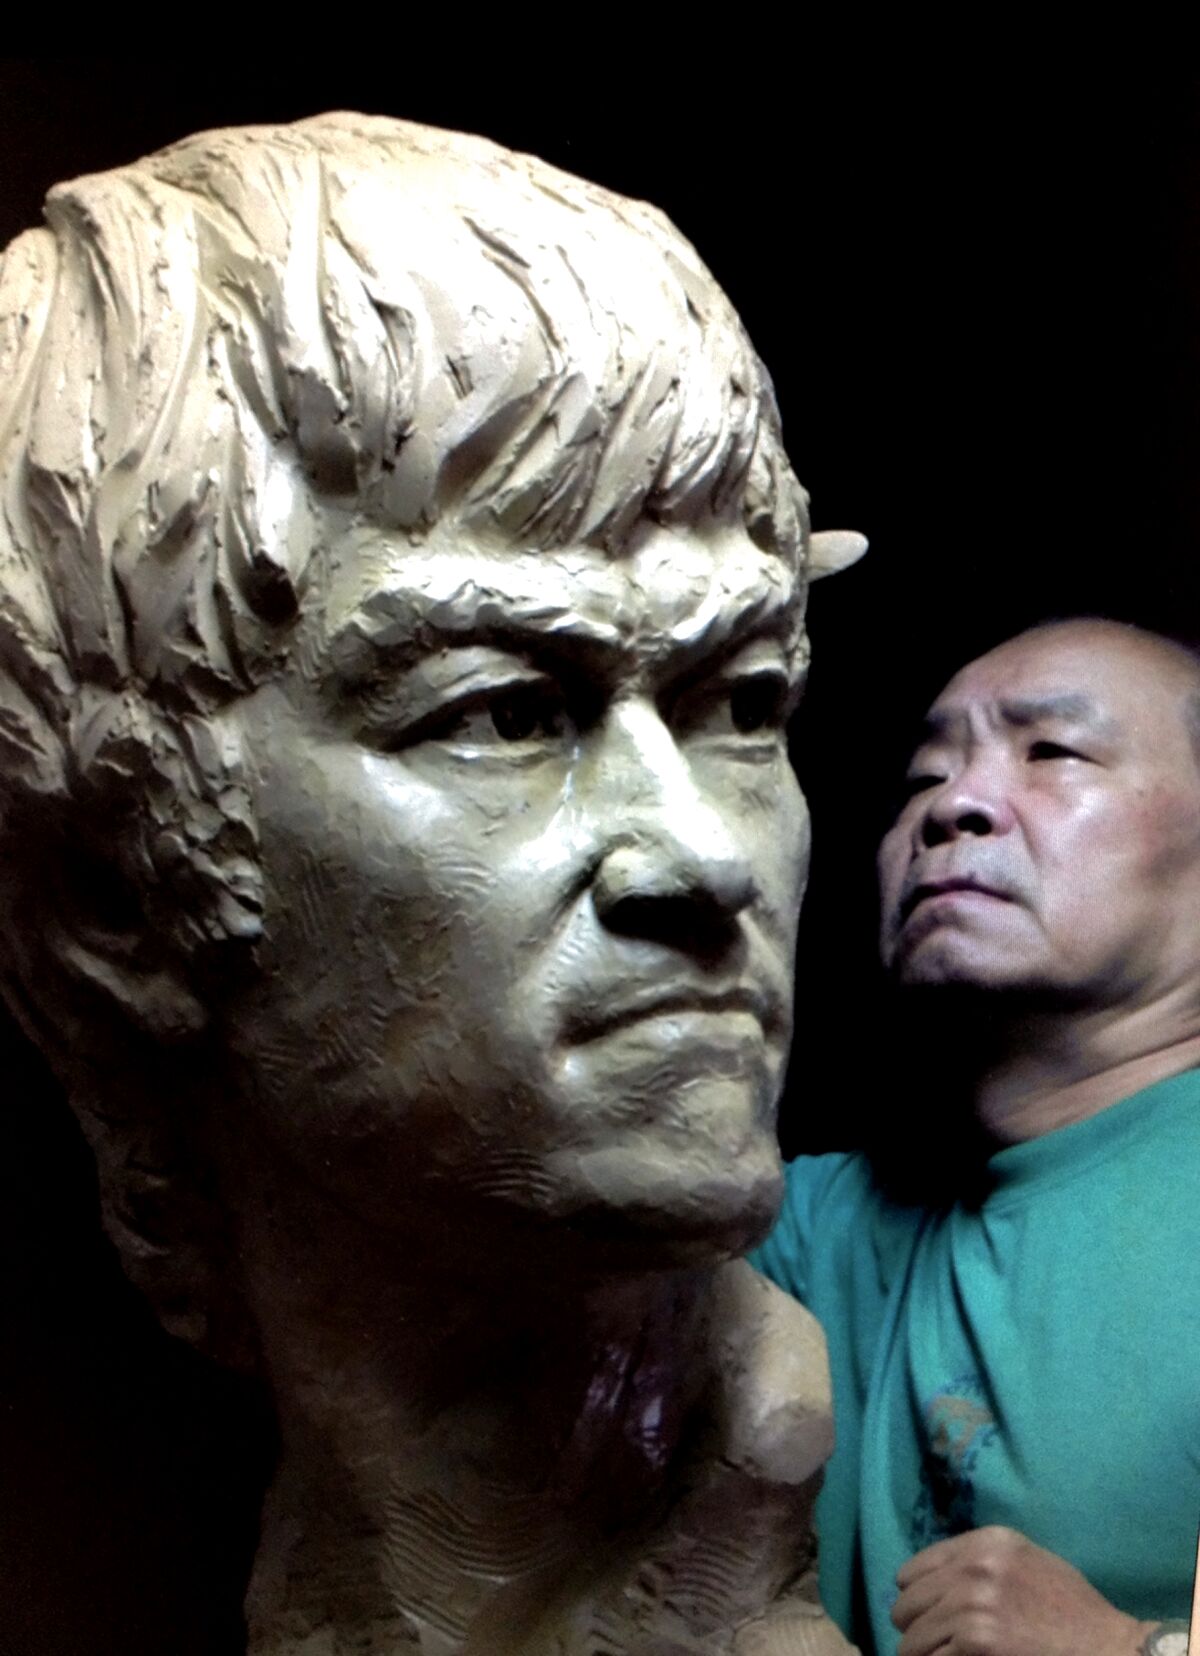 An artist crafting a sculpture of Bruce Lee.